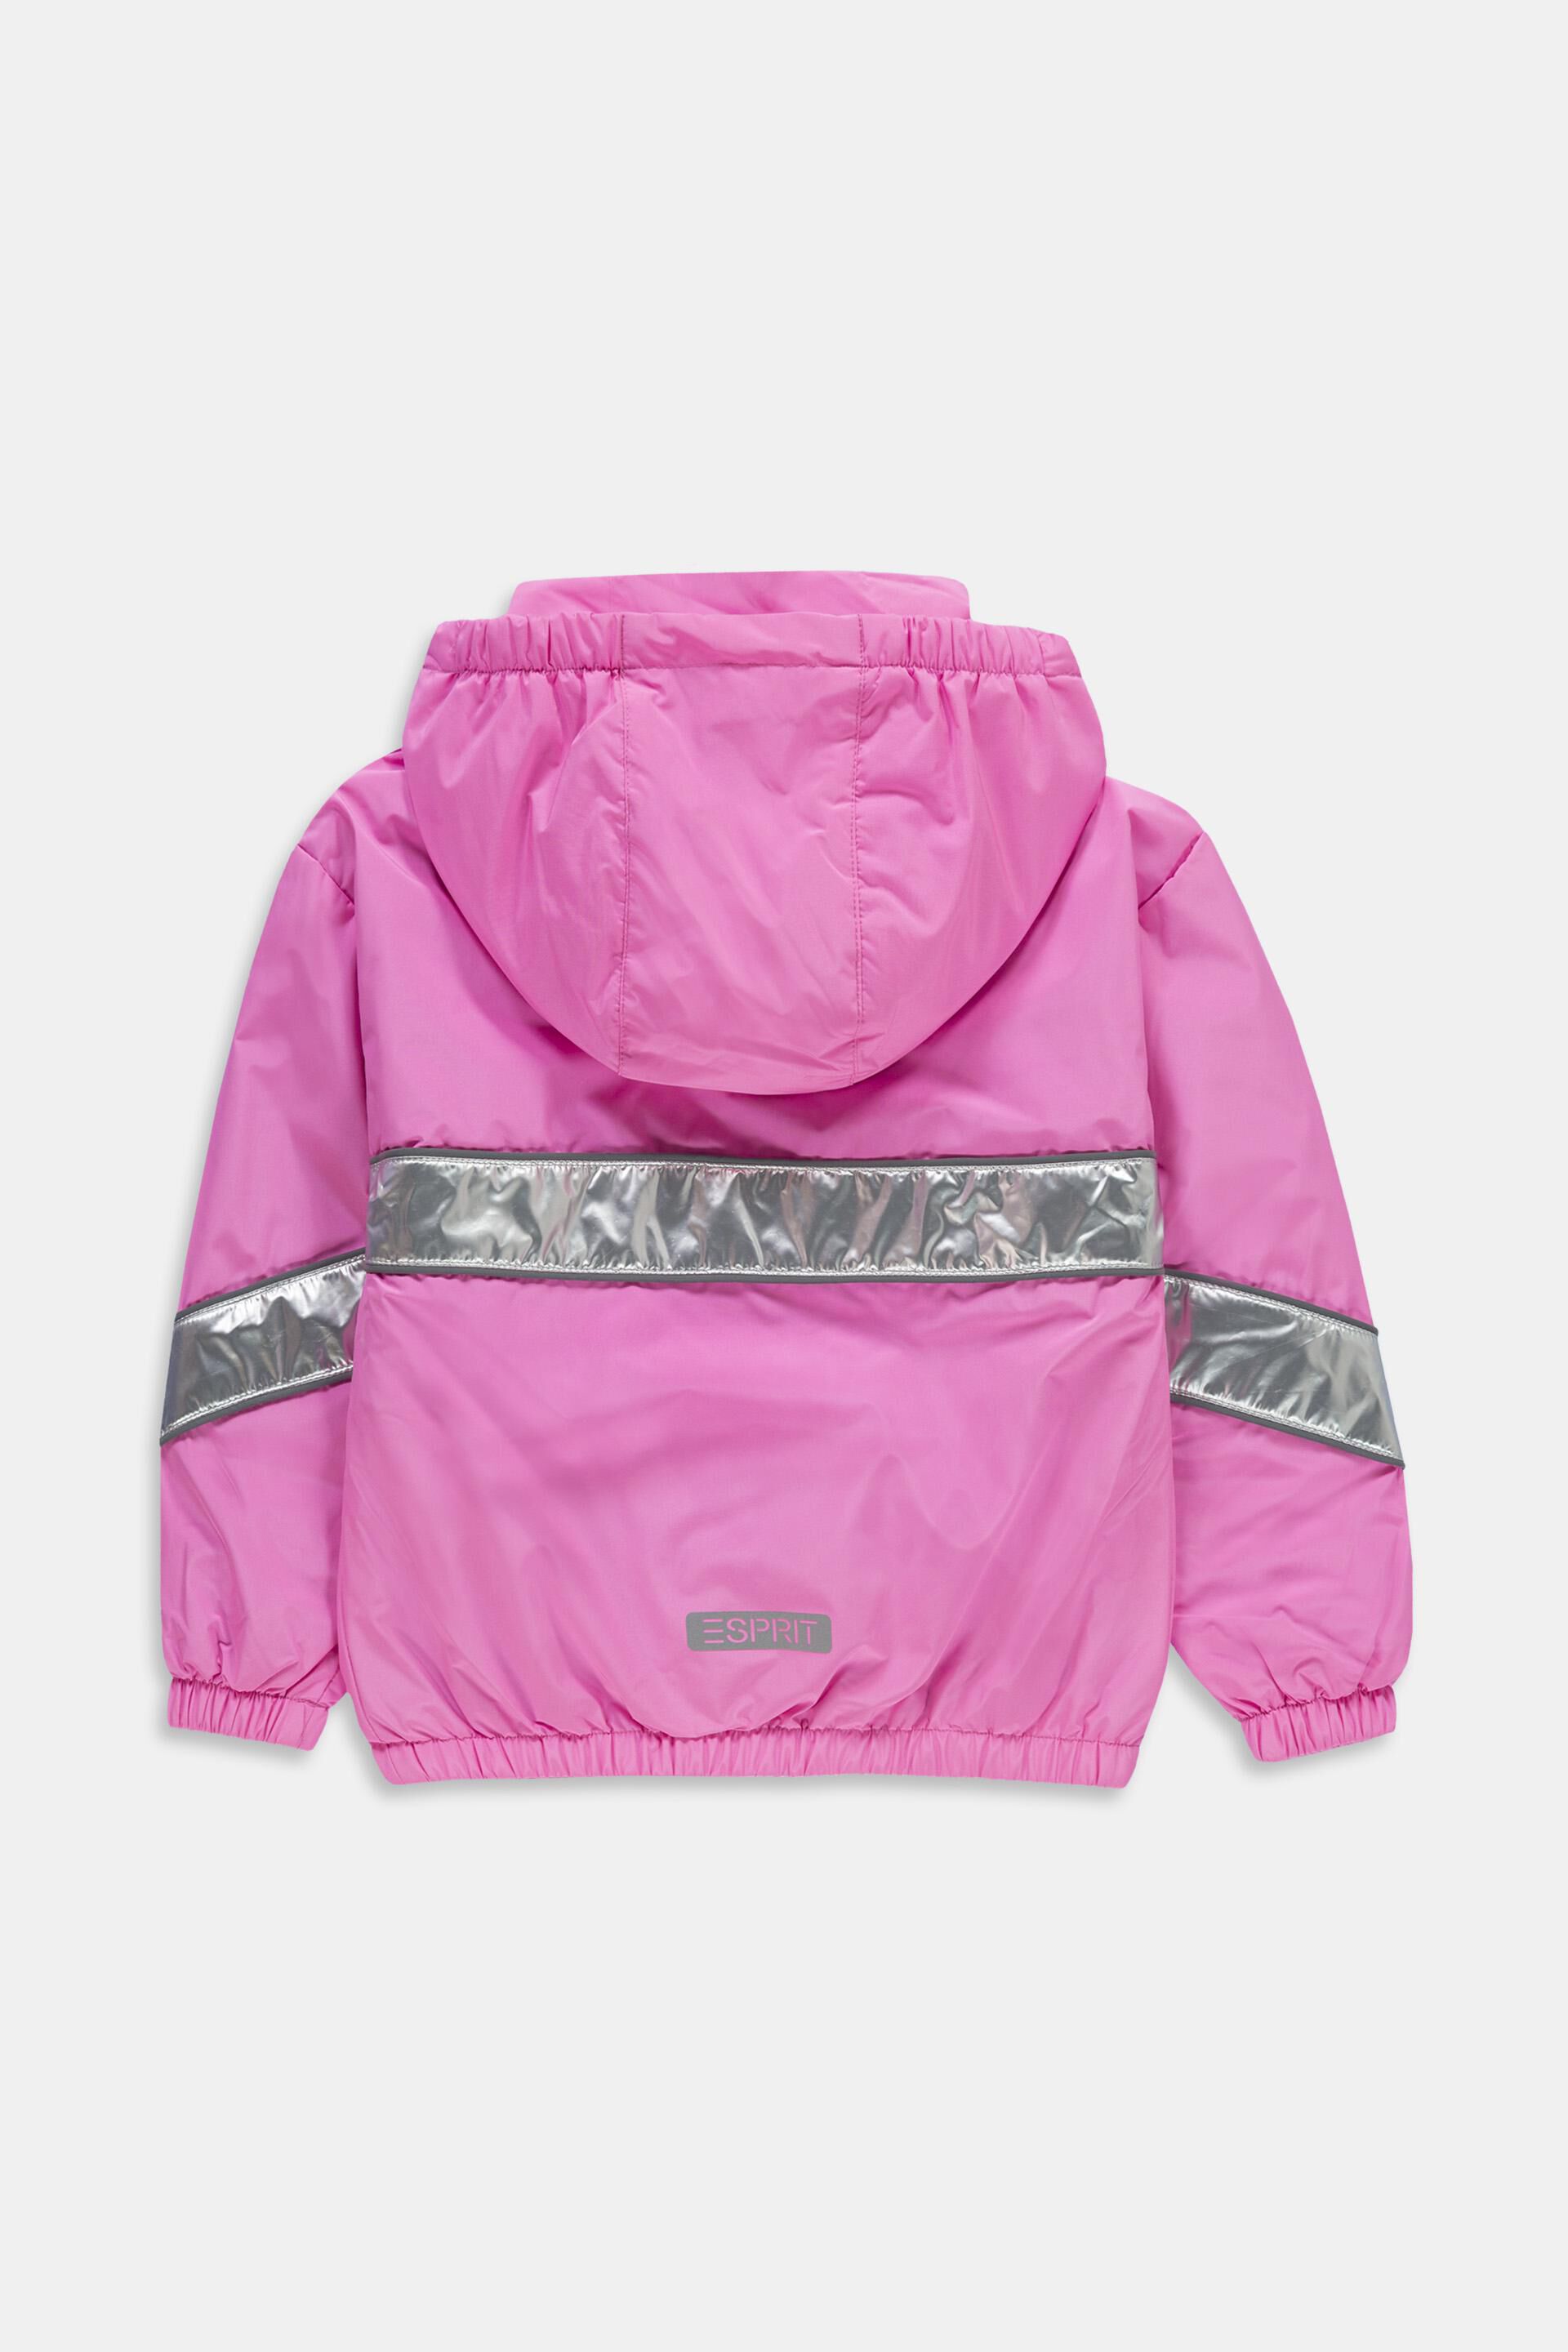 Esprit Winterjacke Pink 176 neuwertig Kinder Mädchen Outdoorbekleidung Jacken Esprit Jacken 